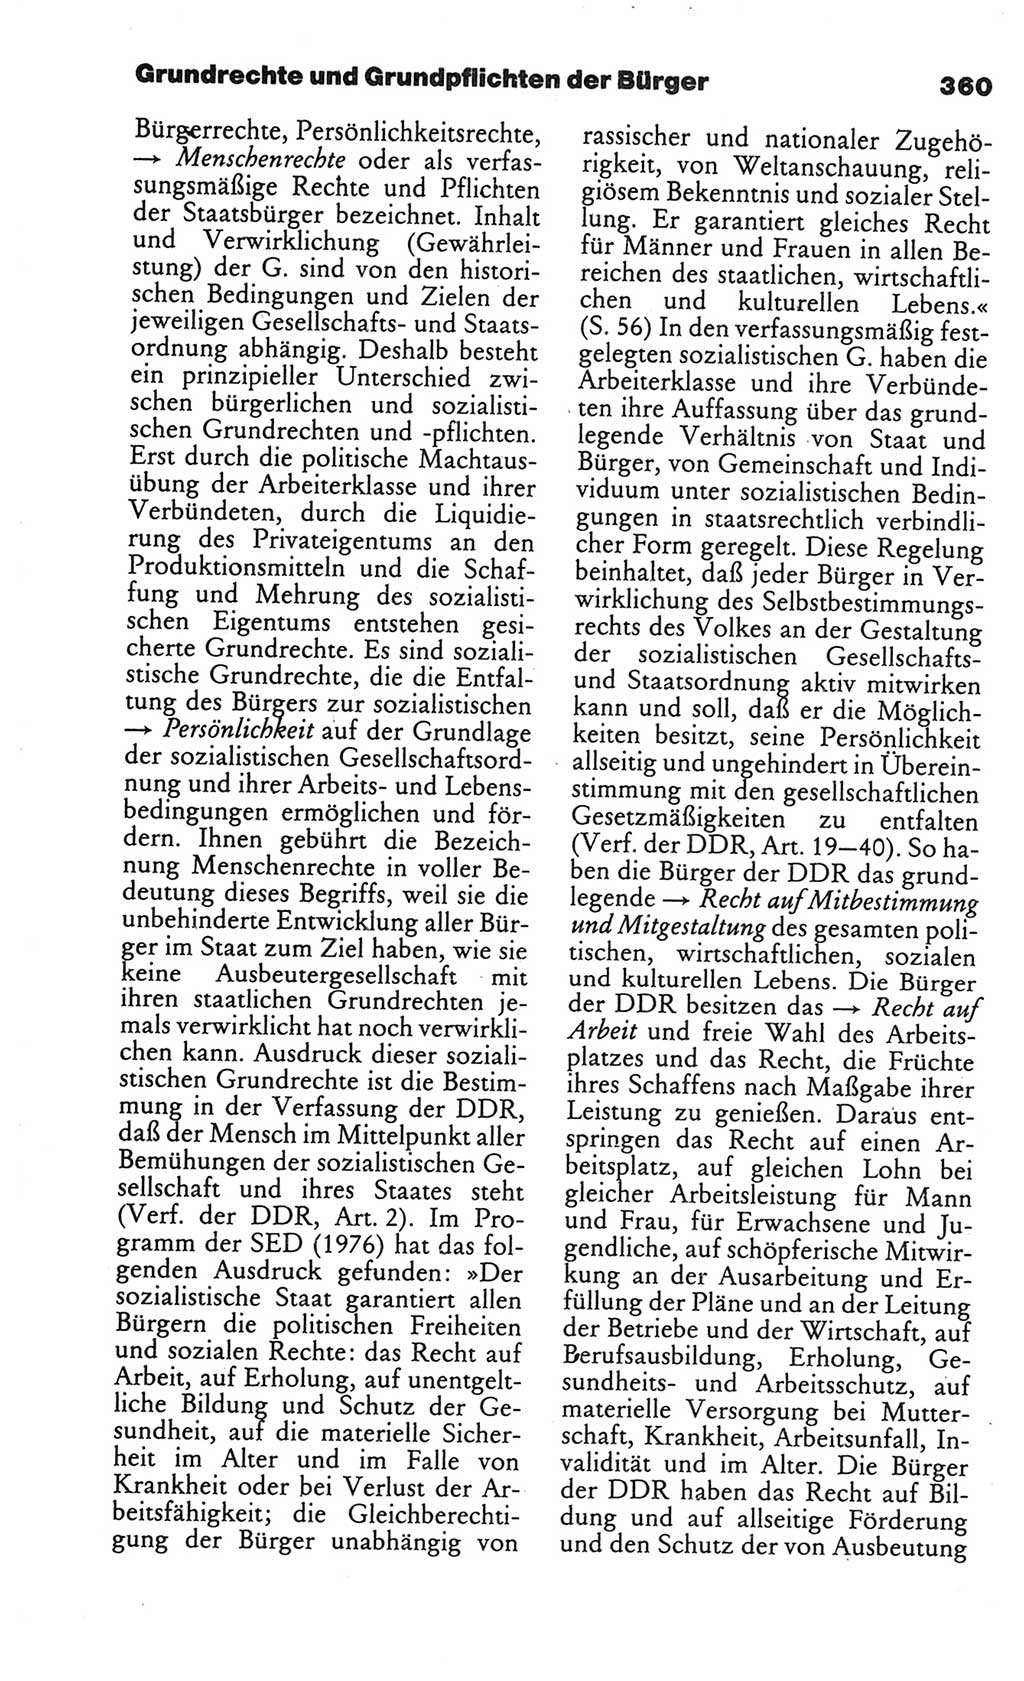 Kleines politisches Wörterbuch [Deutsche Demokratische Republik (DDR)] 1986, Seite 360 (Kl. pol. Wb. DDR 1986, S. 360)